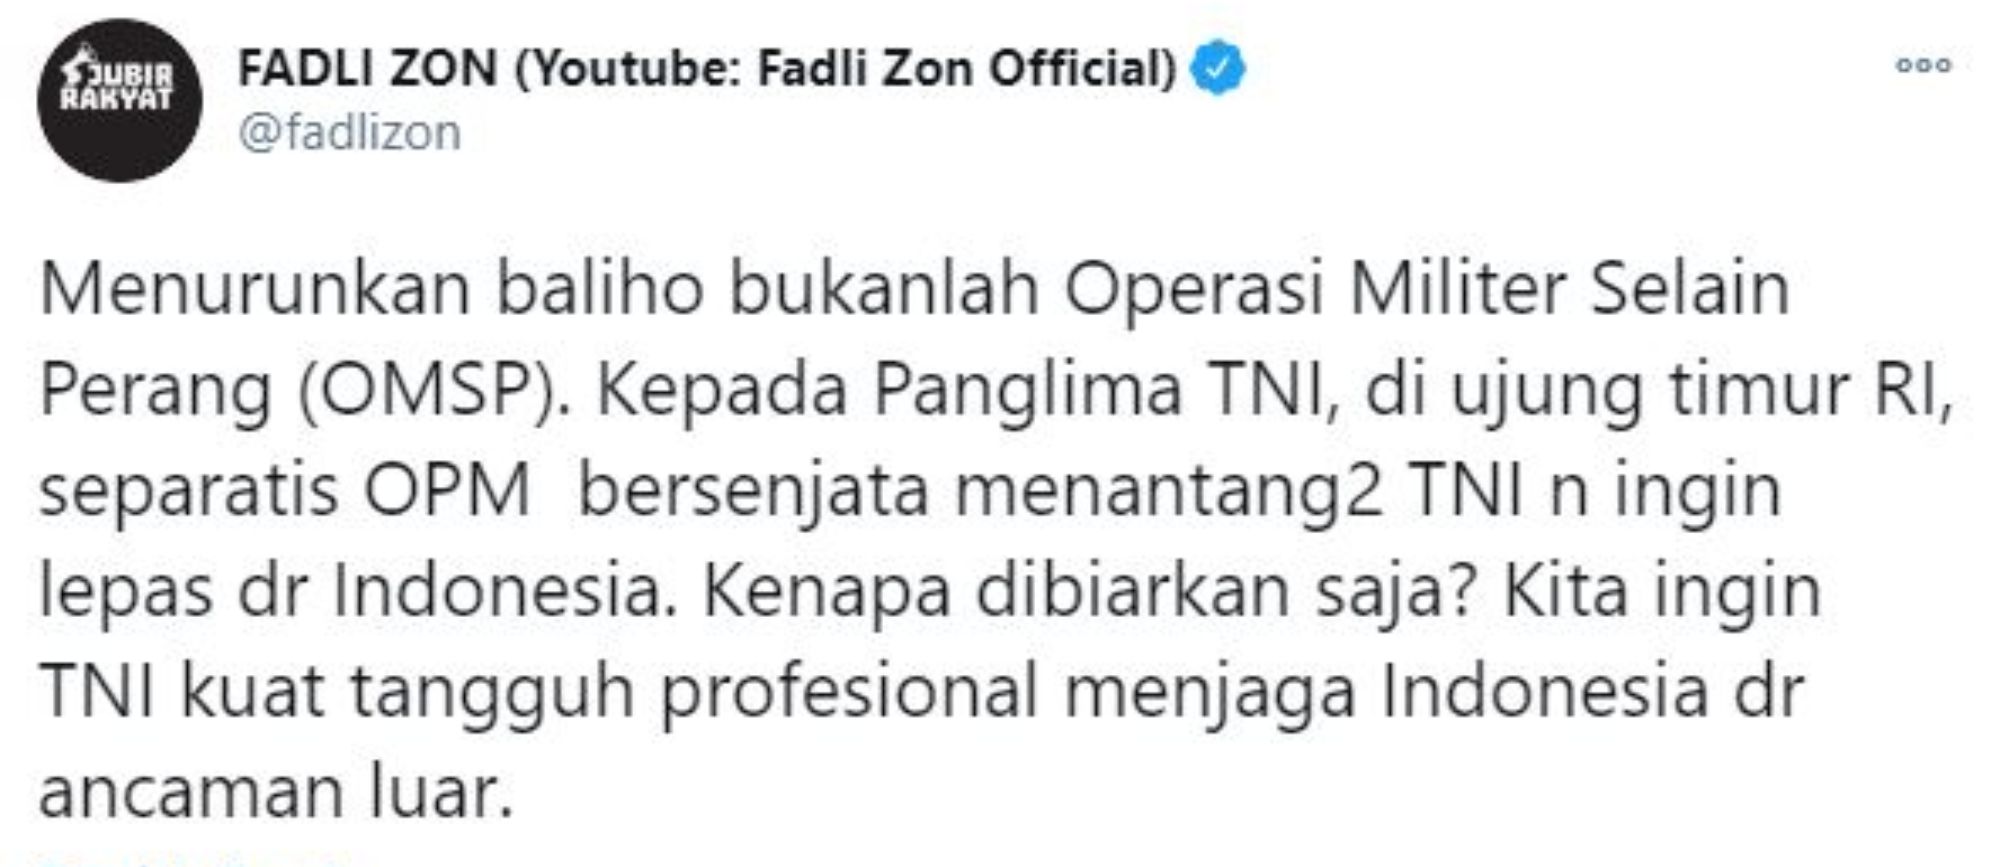 Kritik penurunan baliho FPI, Fadli Zon singgung soal OPM bersenjata yang tantang TNI.